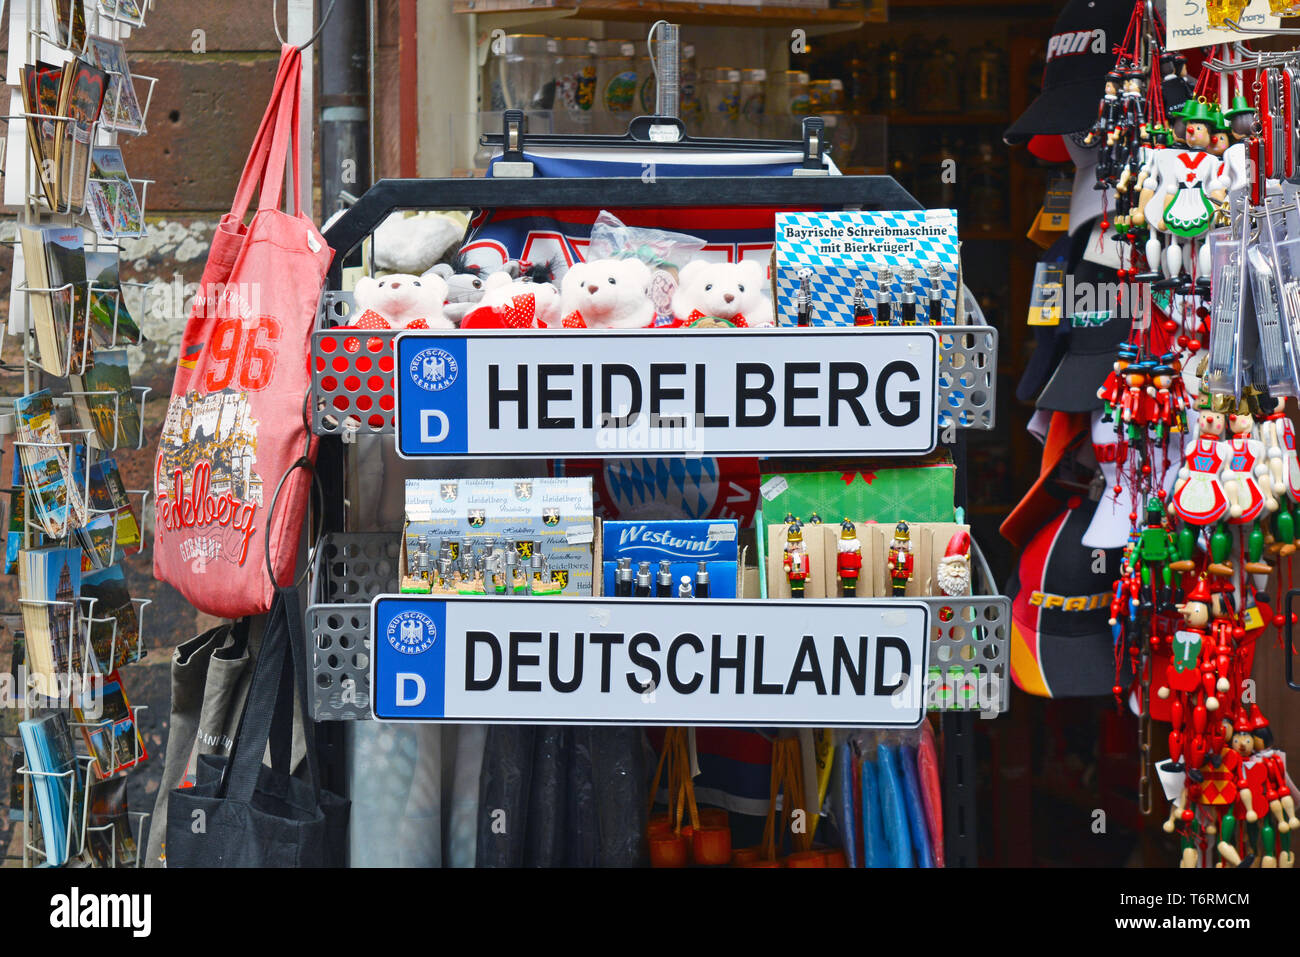 Negozio di souvenir con stand vari souvenir legati alla città di Heidelberg in Germania con targa, il giocattolo di peluche orsi, buste, cartoline e altri Foto Stock